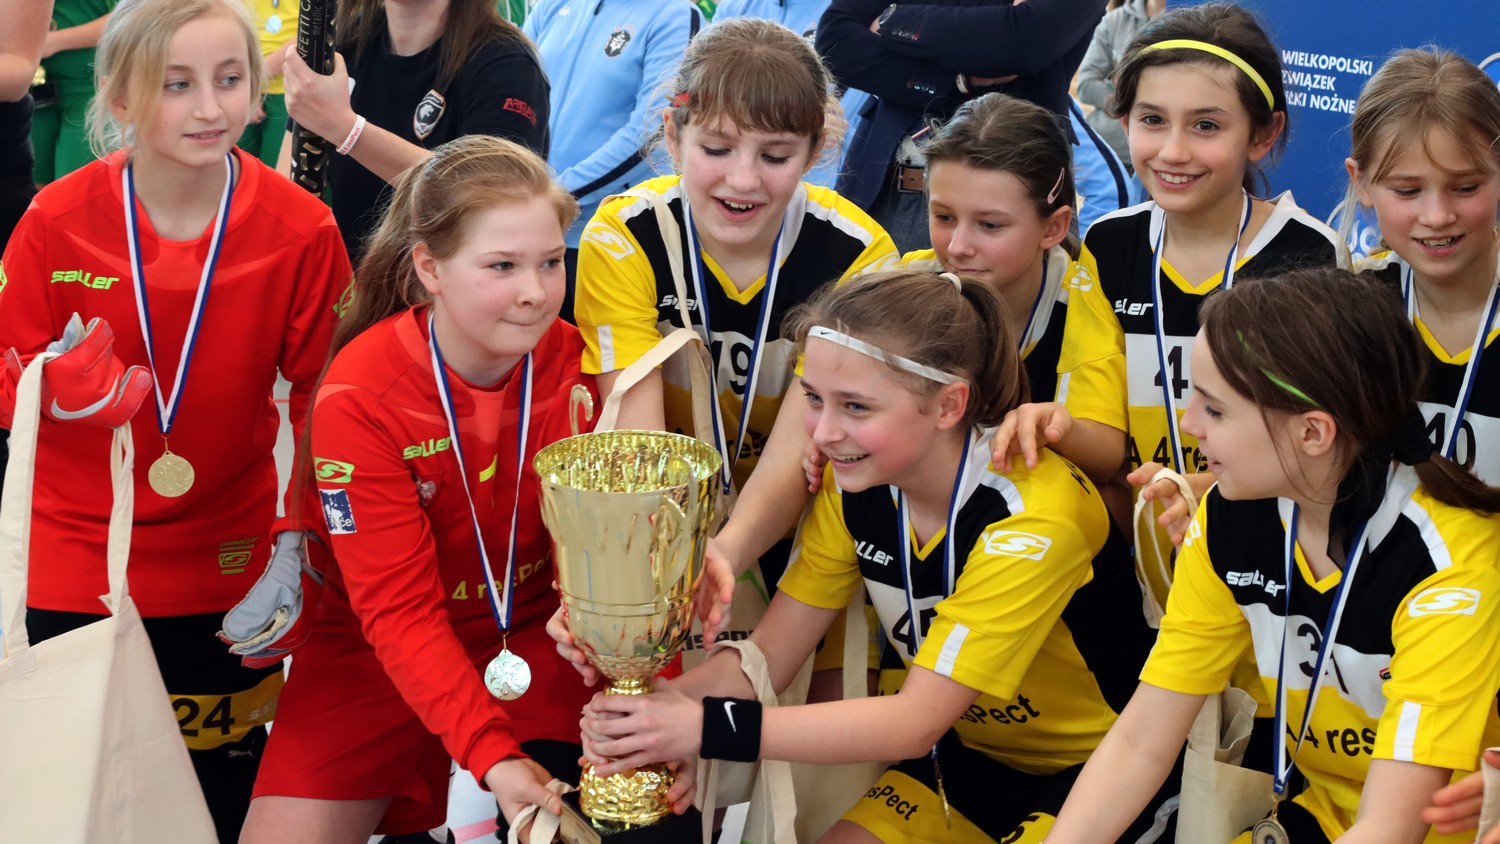 Halowe Mistrzostwa Wielkopolski U13 w Miejskiej Górce. Zwycięstwo KA 4 resPect [FOTO] - Zdjęcie główne